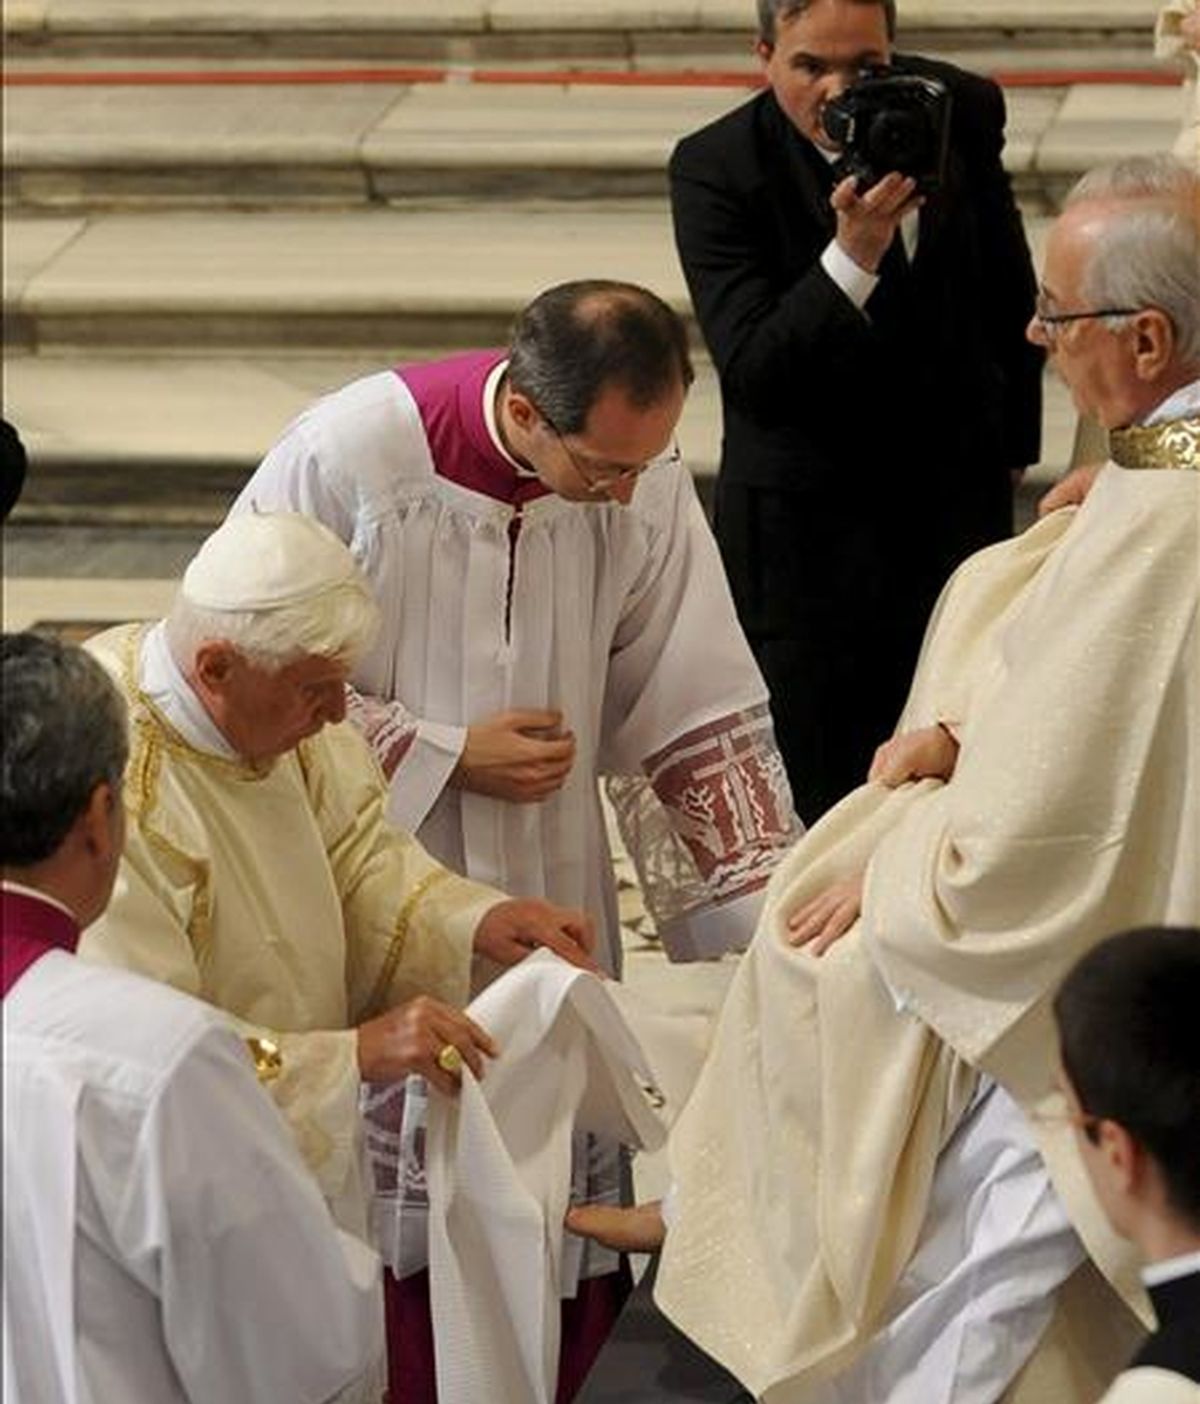 Benedicto XVI le lava los pies a uno de sus 12 sacerdotes durante la misa del Jueves Santo para conmemorar la última cena de Jesús, hoy en la basílida de San Juan de Letrán, considerada la catedral de Roma. EFE